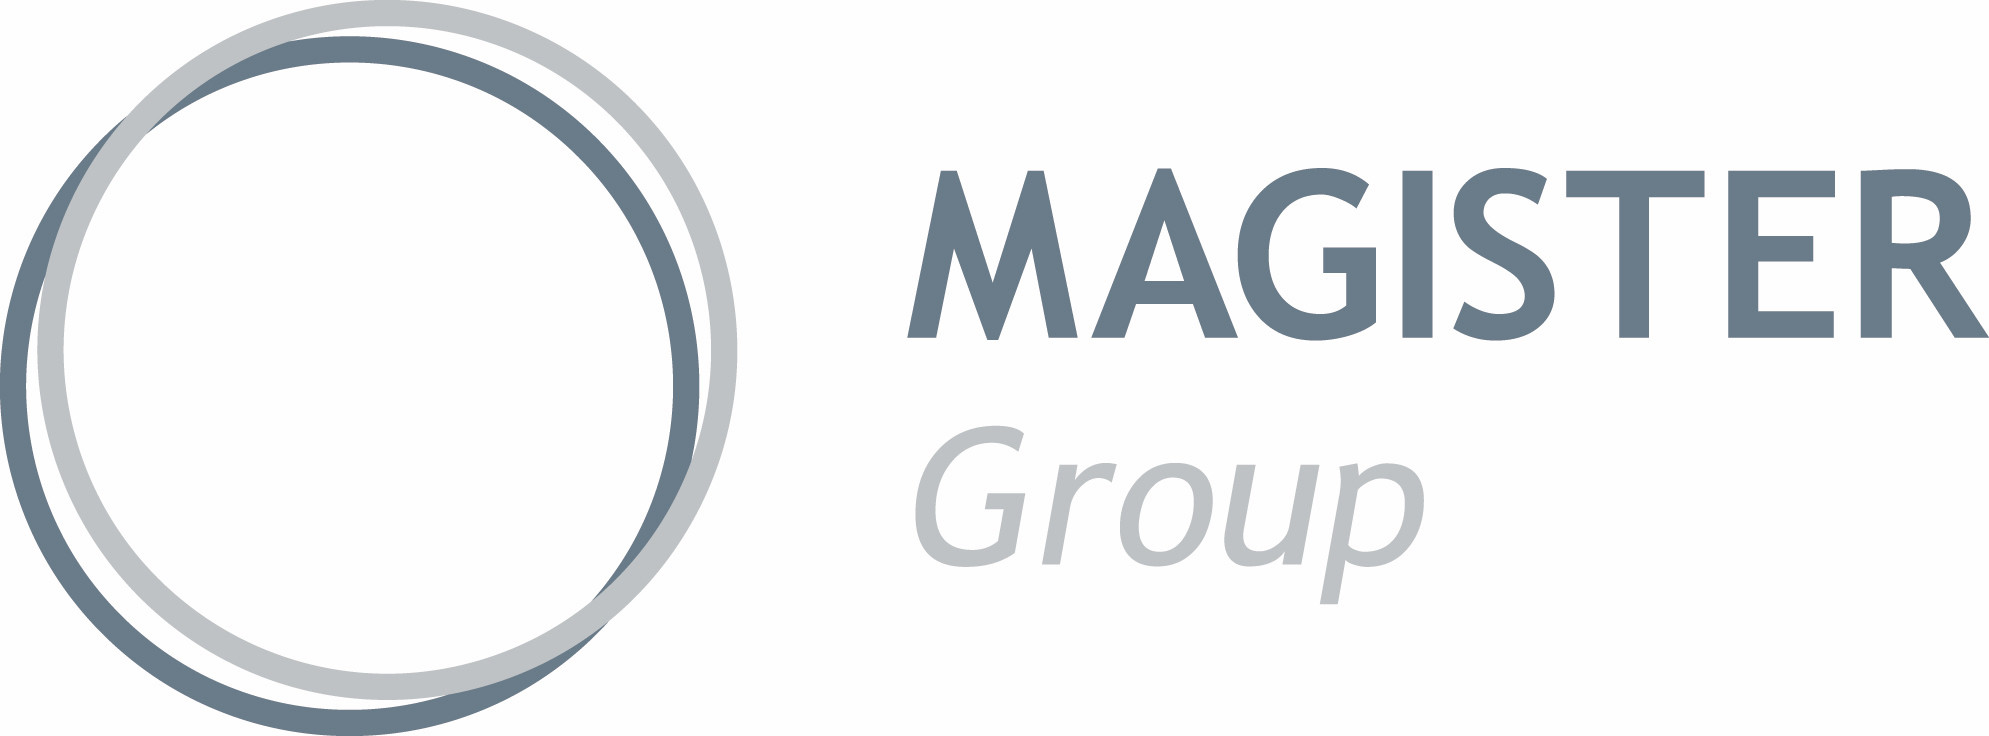 Magistergroup logo